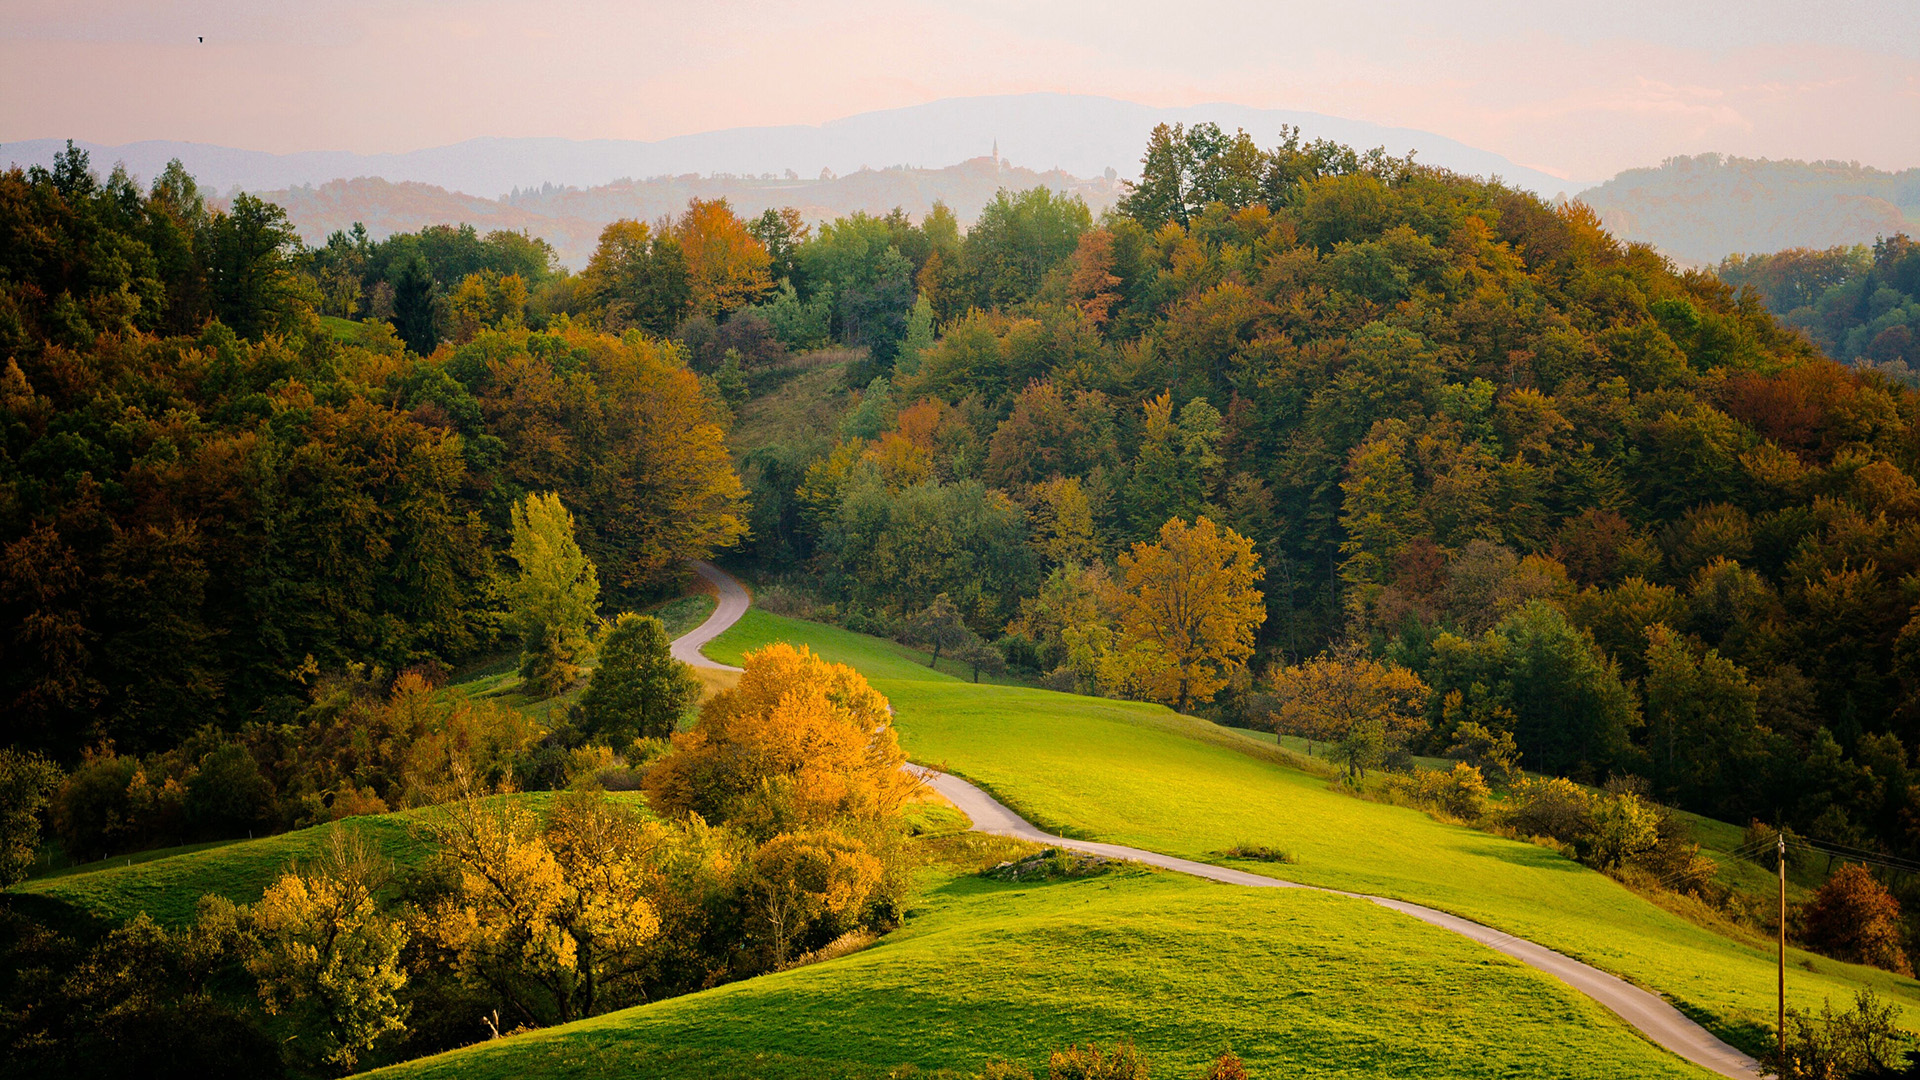 秋天风景,树木,小路,闲逸静谧,风景桌面壁纸